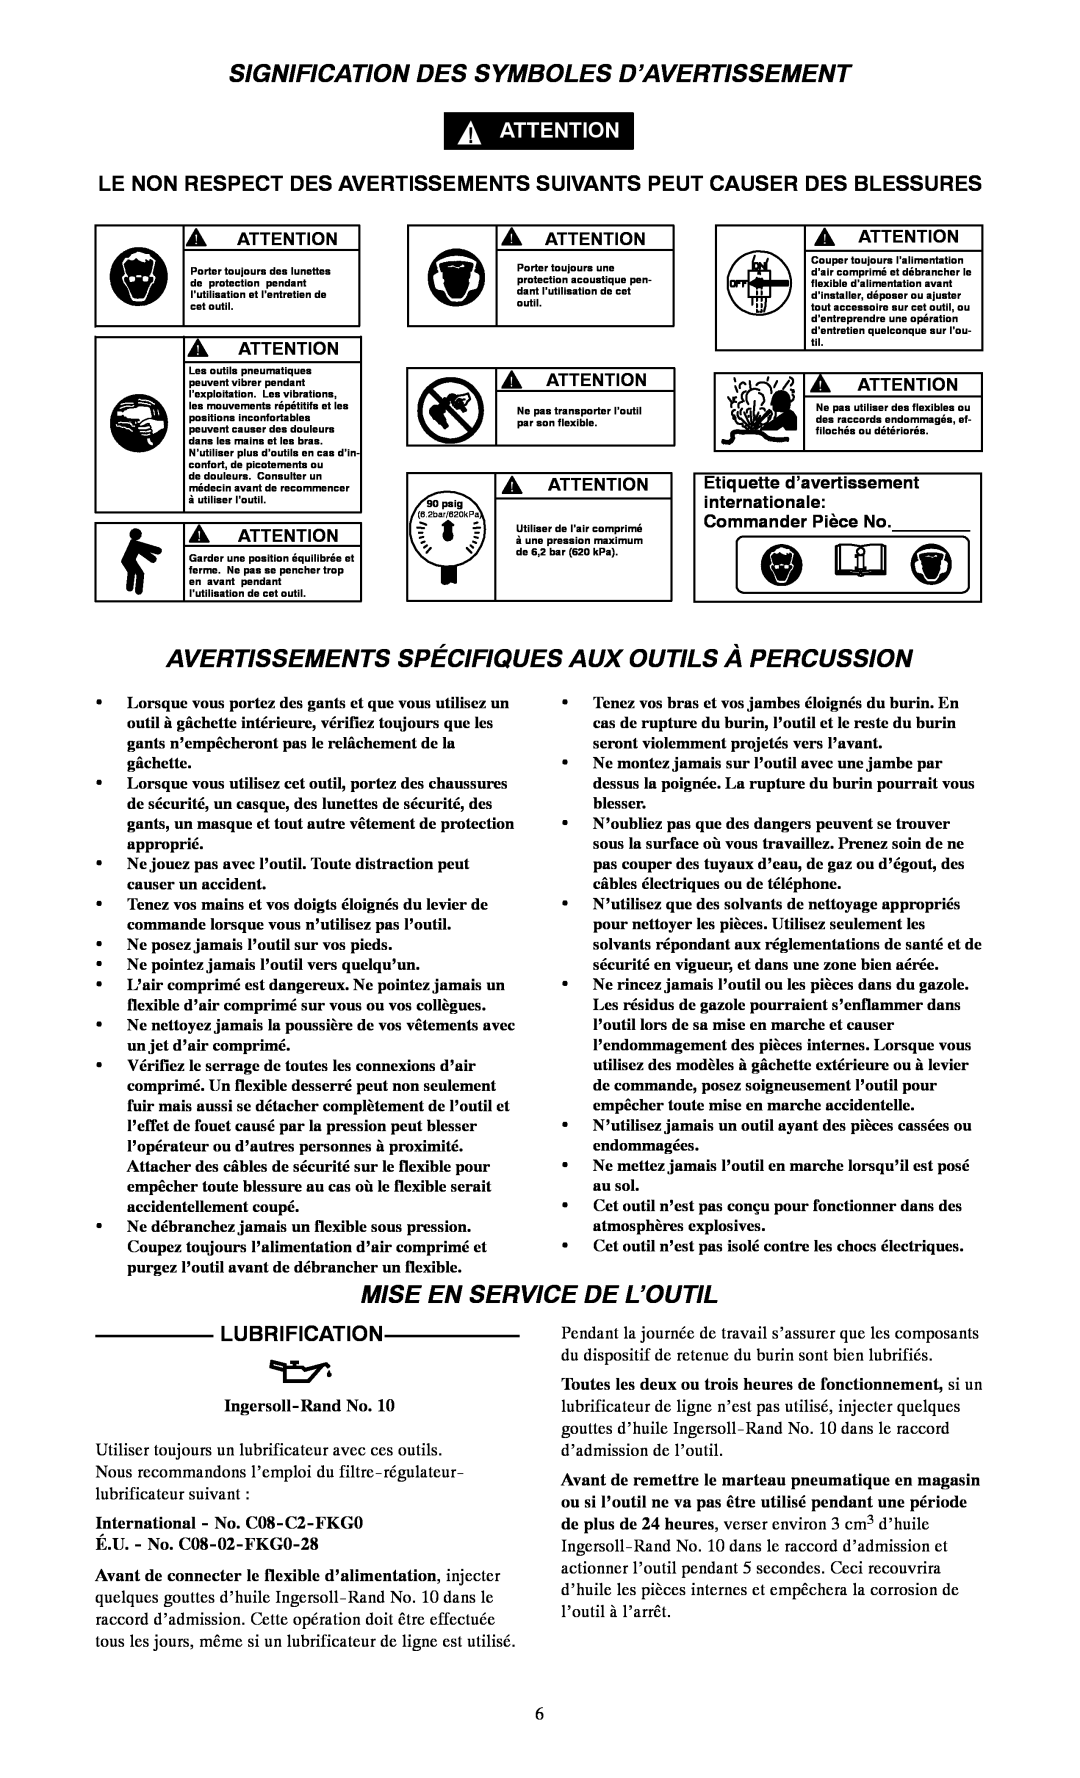 Ingersoll-Rand 116--EU, 115 Signification Des Symboles D’Avertissement, Avertissements Spécifiques Aux Outils À Percussion 